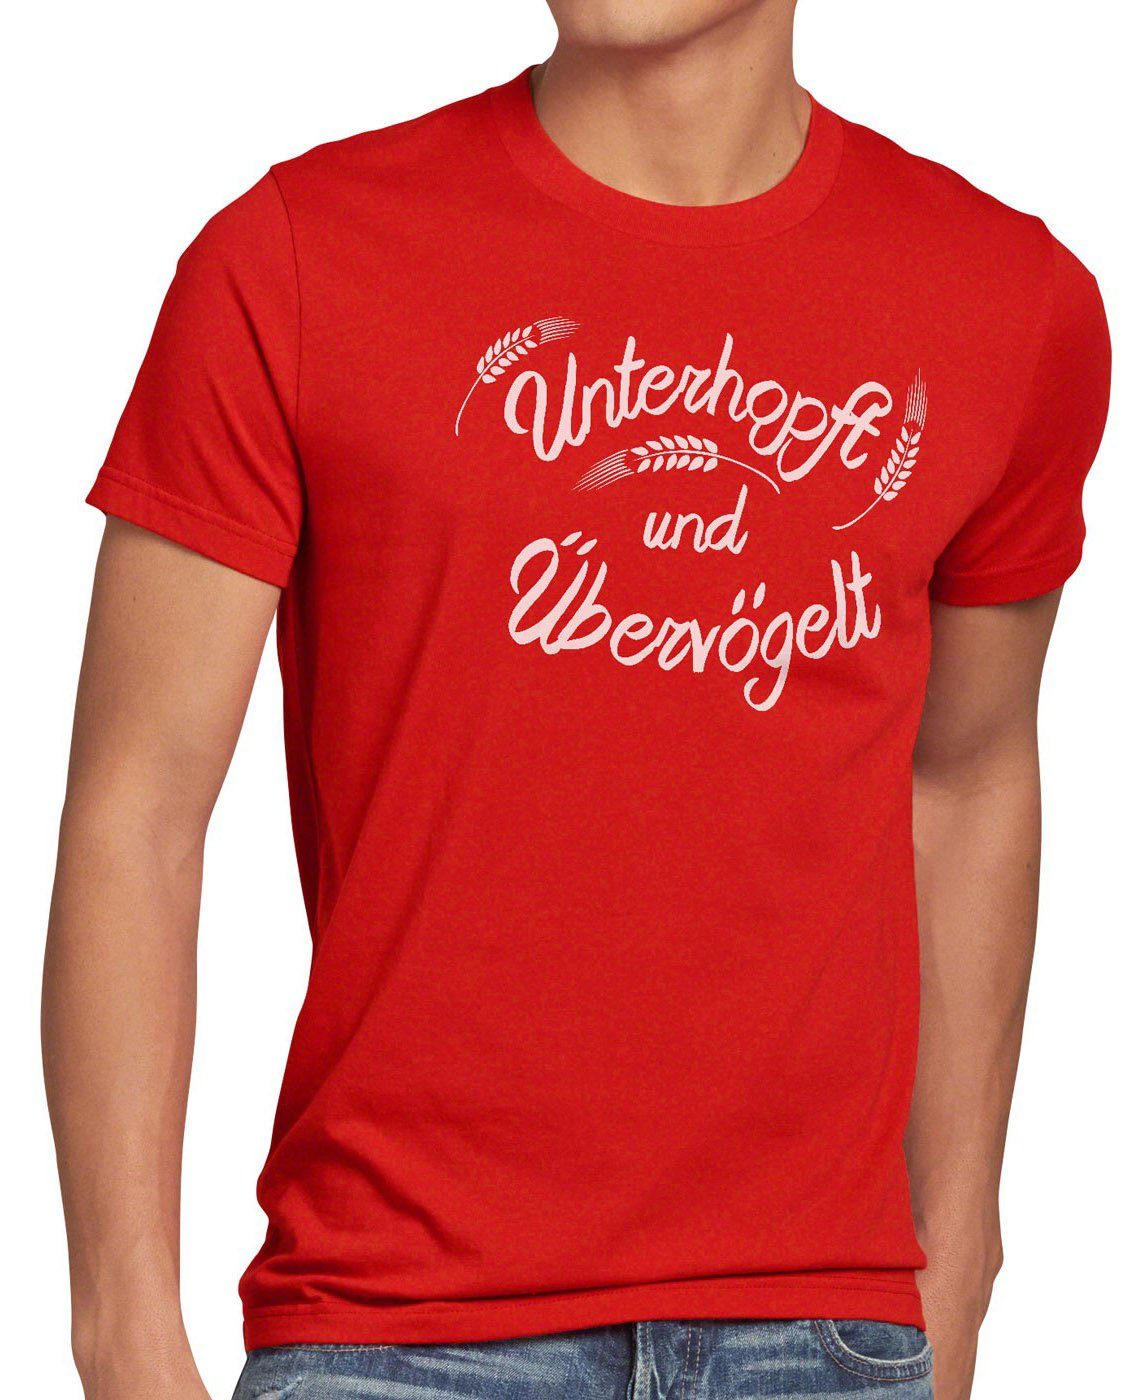 Malz Unterhopft rot T-Shirt Fun Funshirt Kult Print-Shirt Shirt Bier Übervögelt Spruch Herren style3